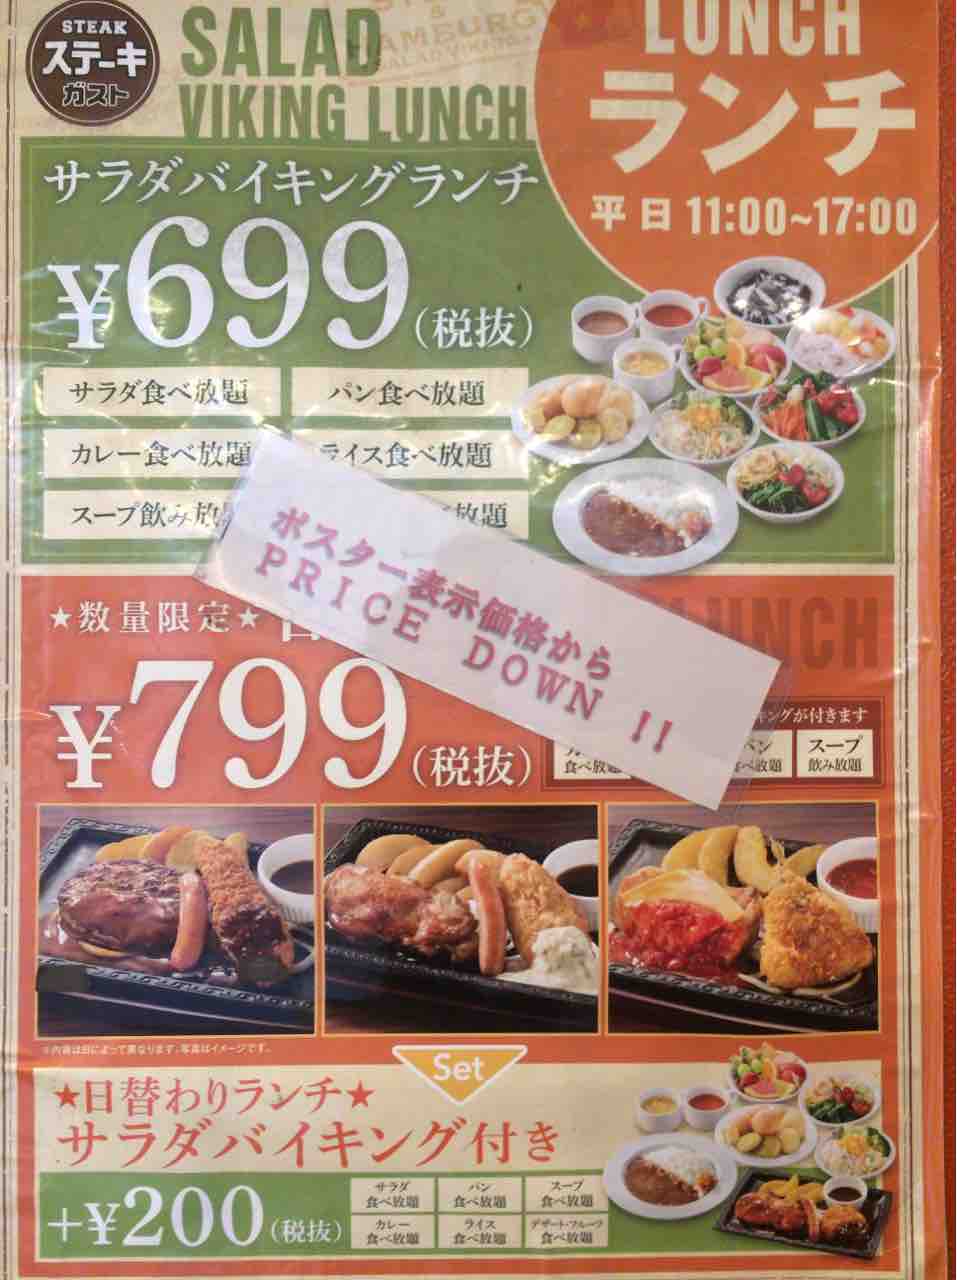 599円のサラダバーでチェーン店の安定感を食らえ ステーキガスト 東京美食life